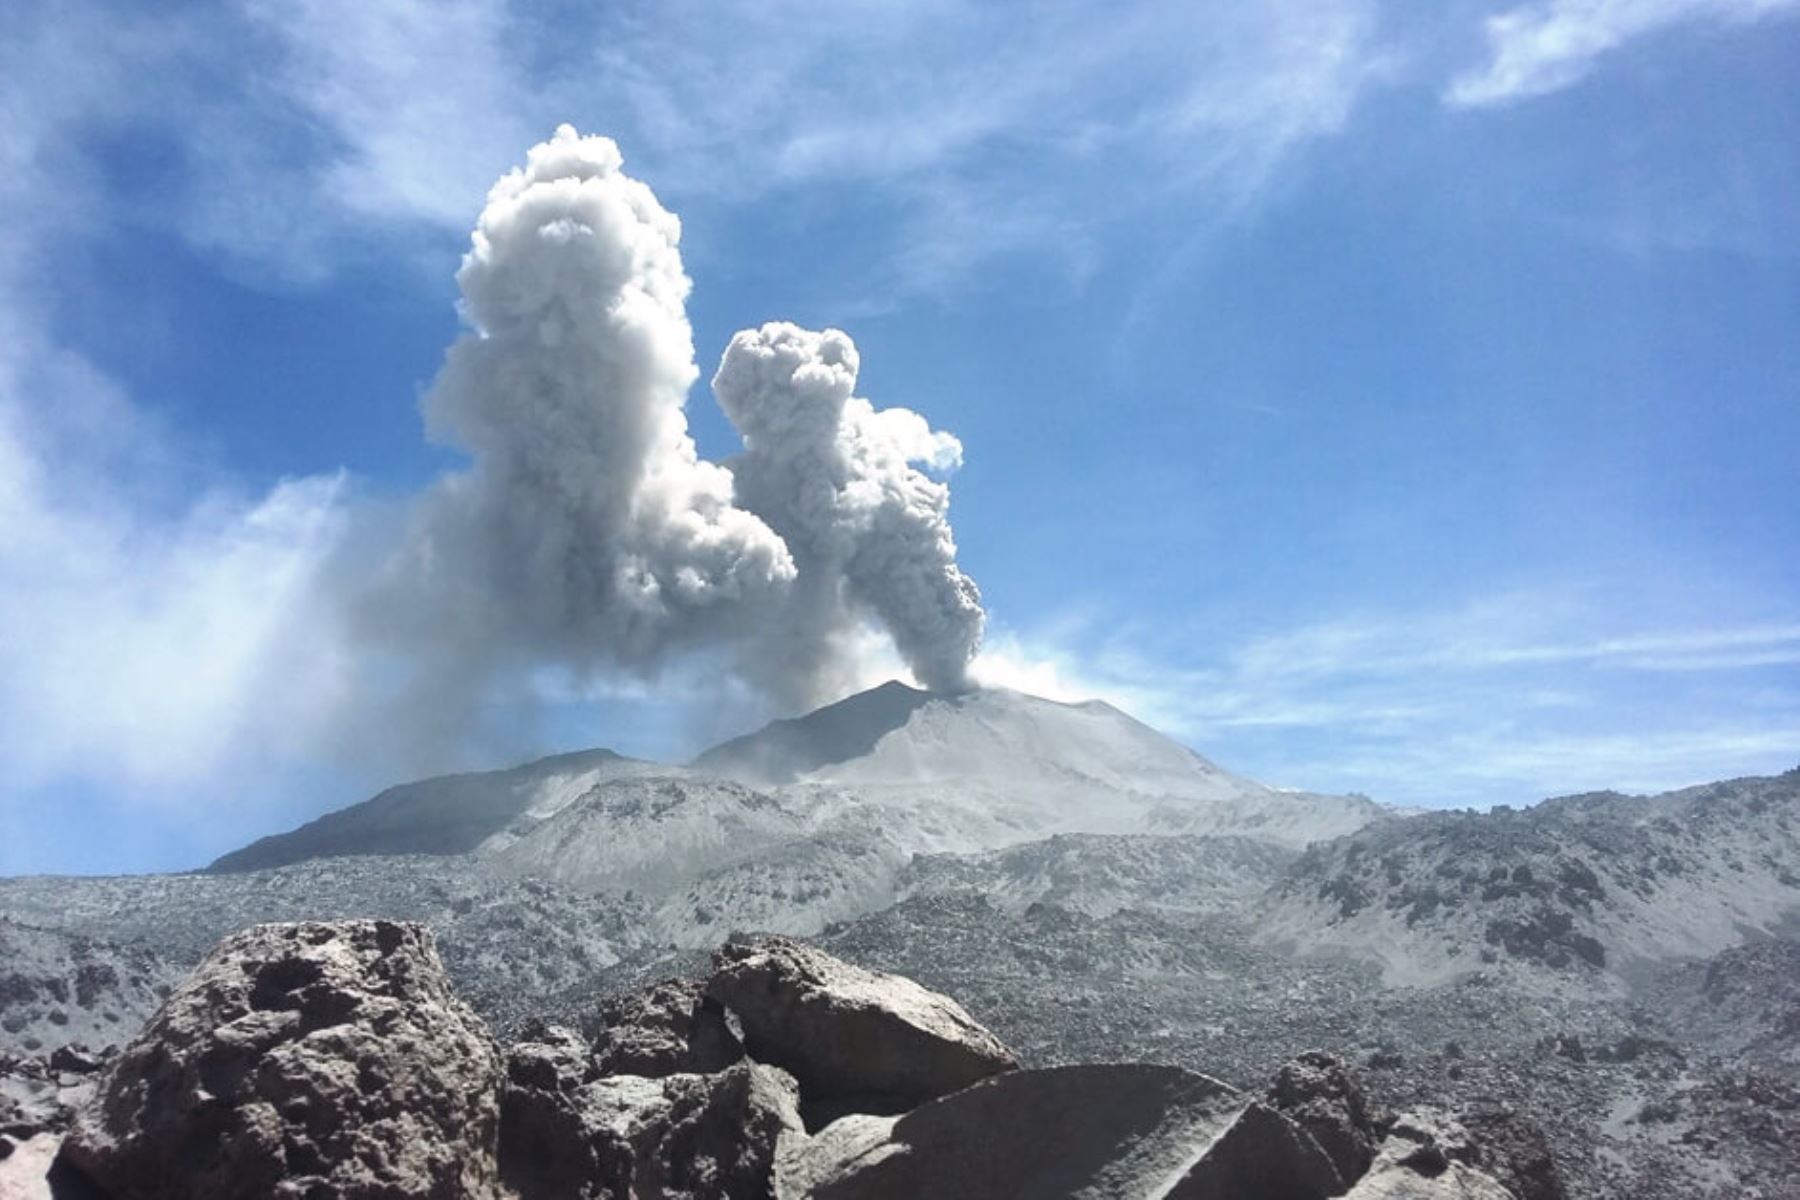 Volcán Sabancaya sigue en alerta naranja con 23 explosiones diarias, informó el Instituto Geofísico del Perú al COEN. ANDINA/Difusión